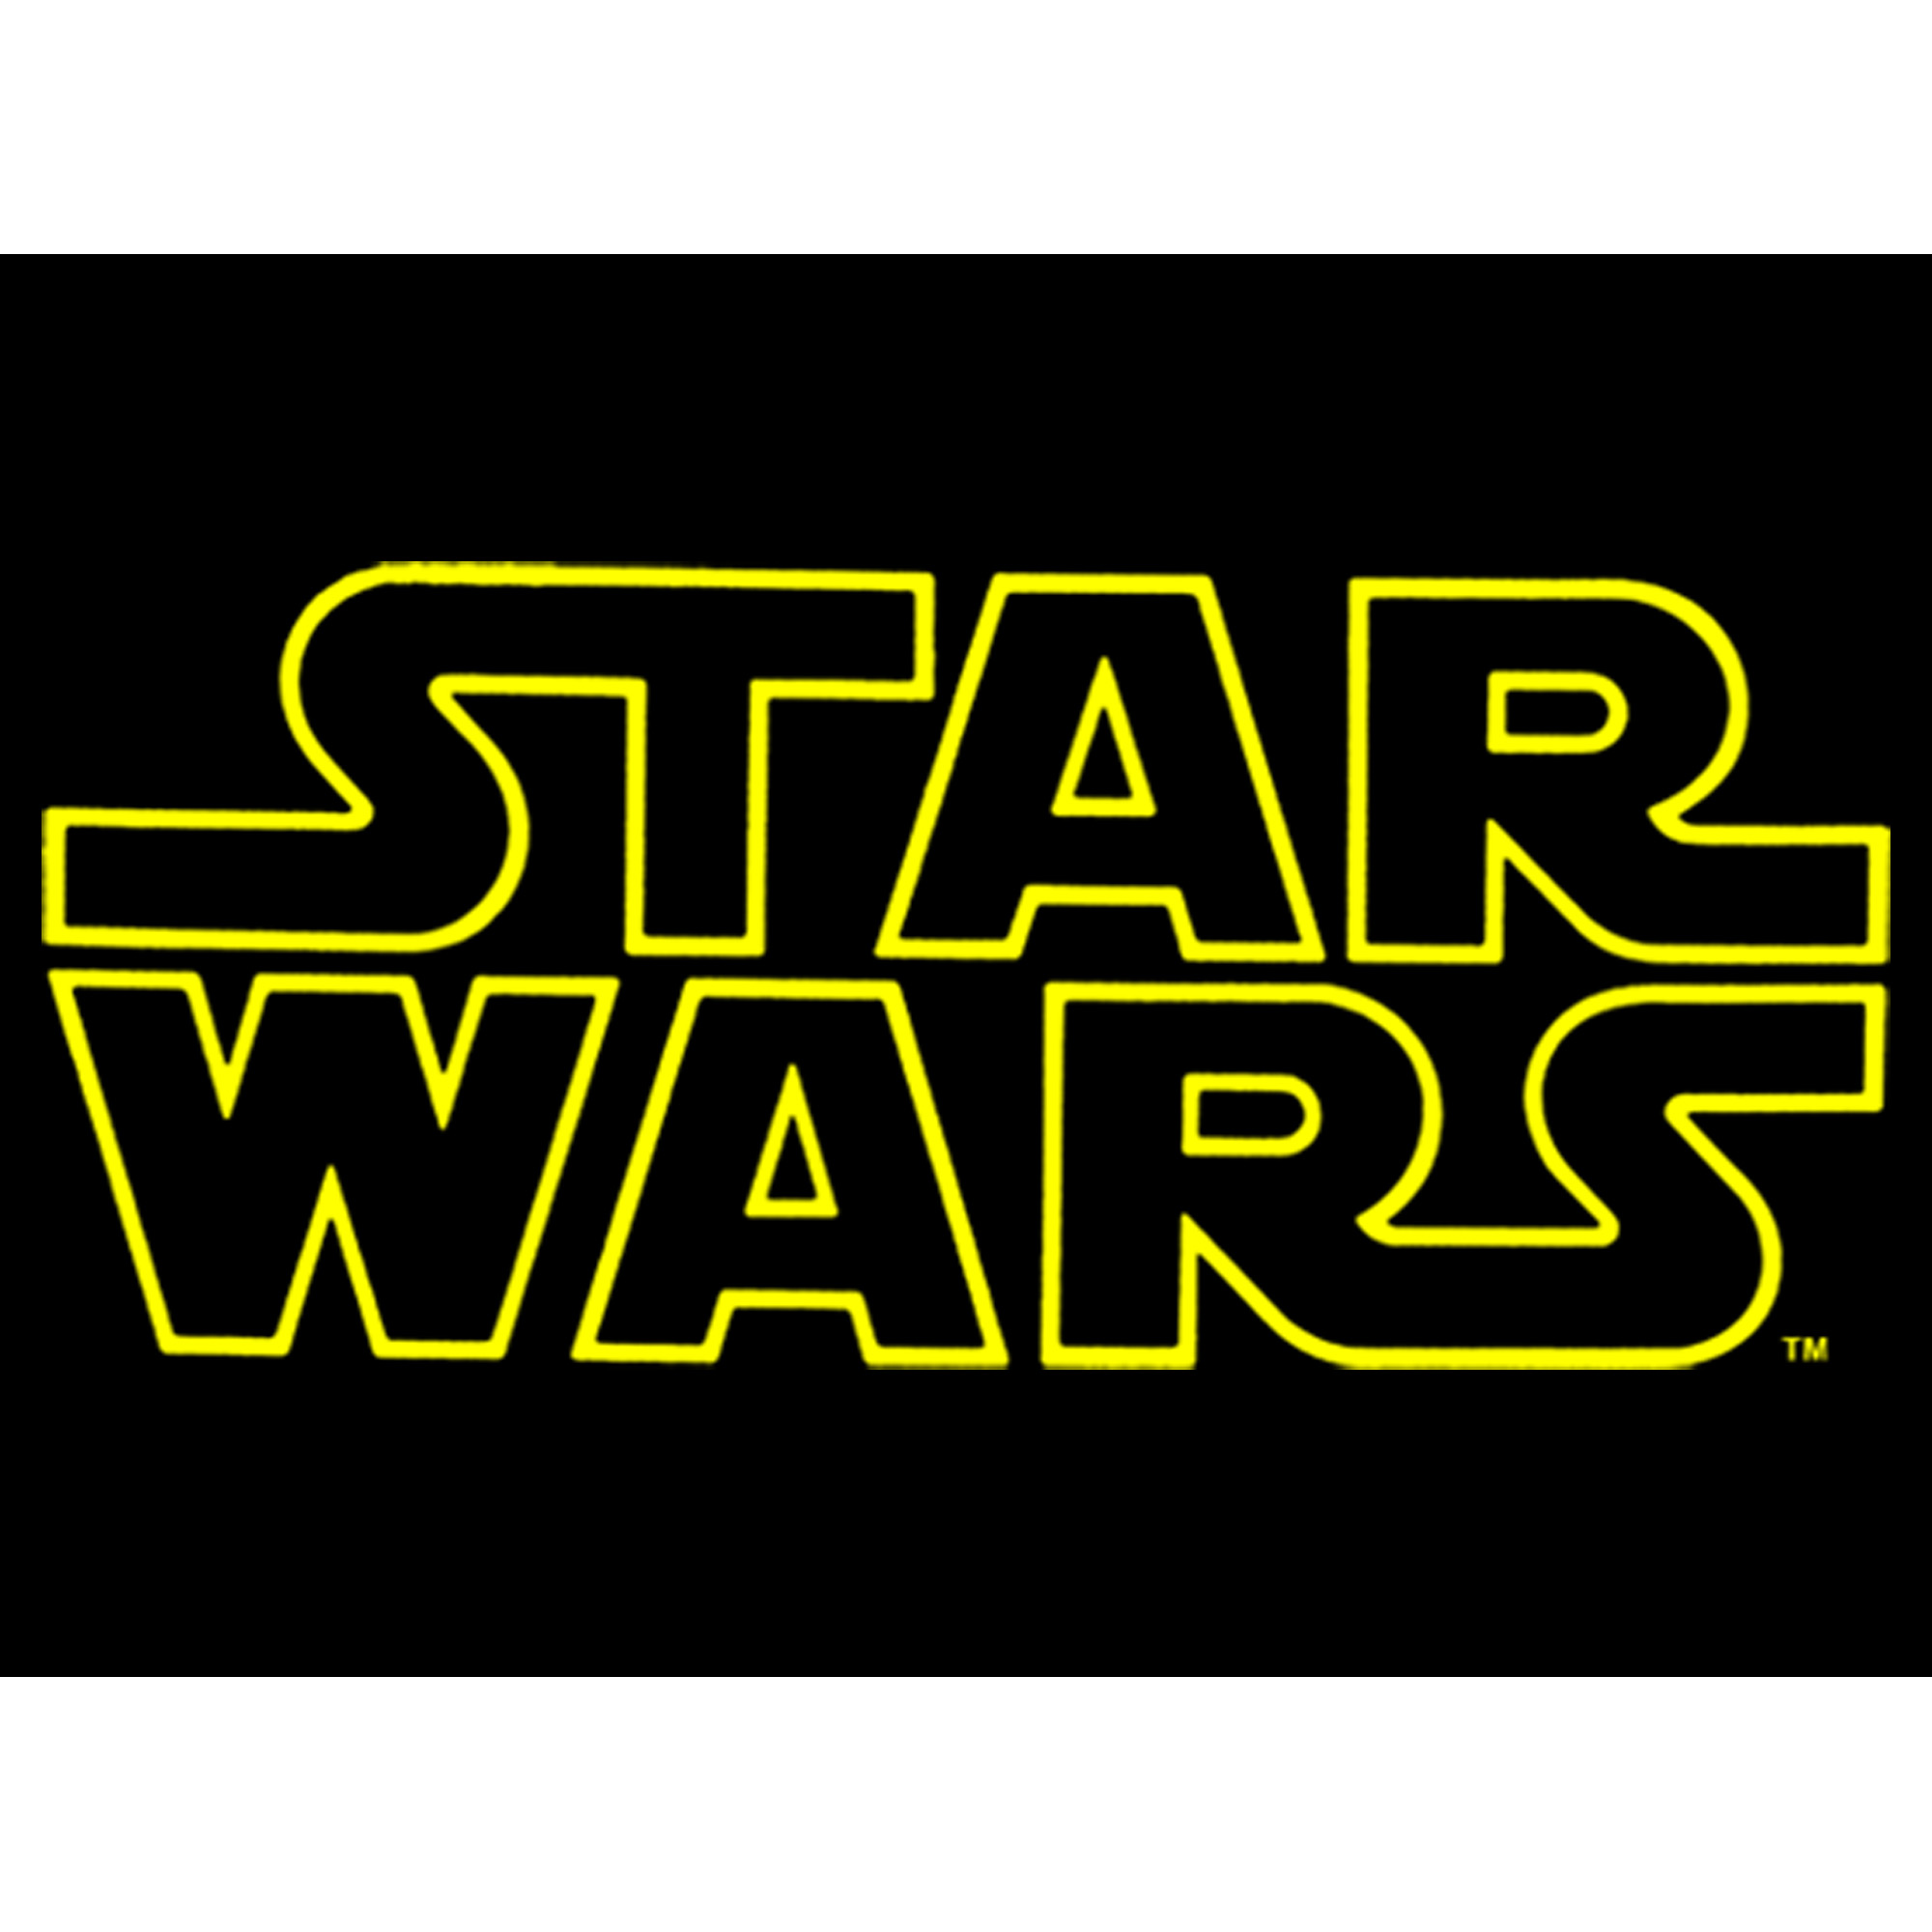 Star Wars Boy's Star Wars Movie Logo  Graphic T-Shirt